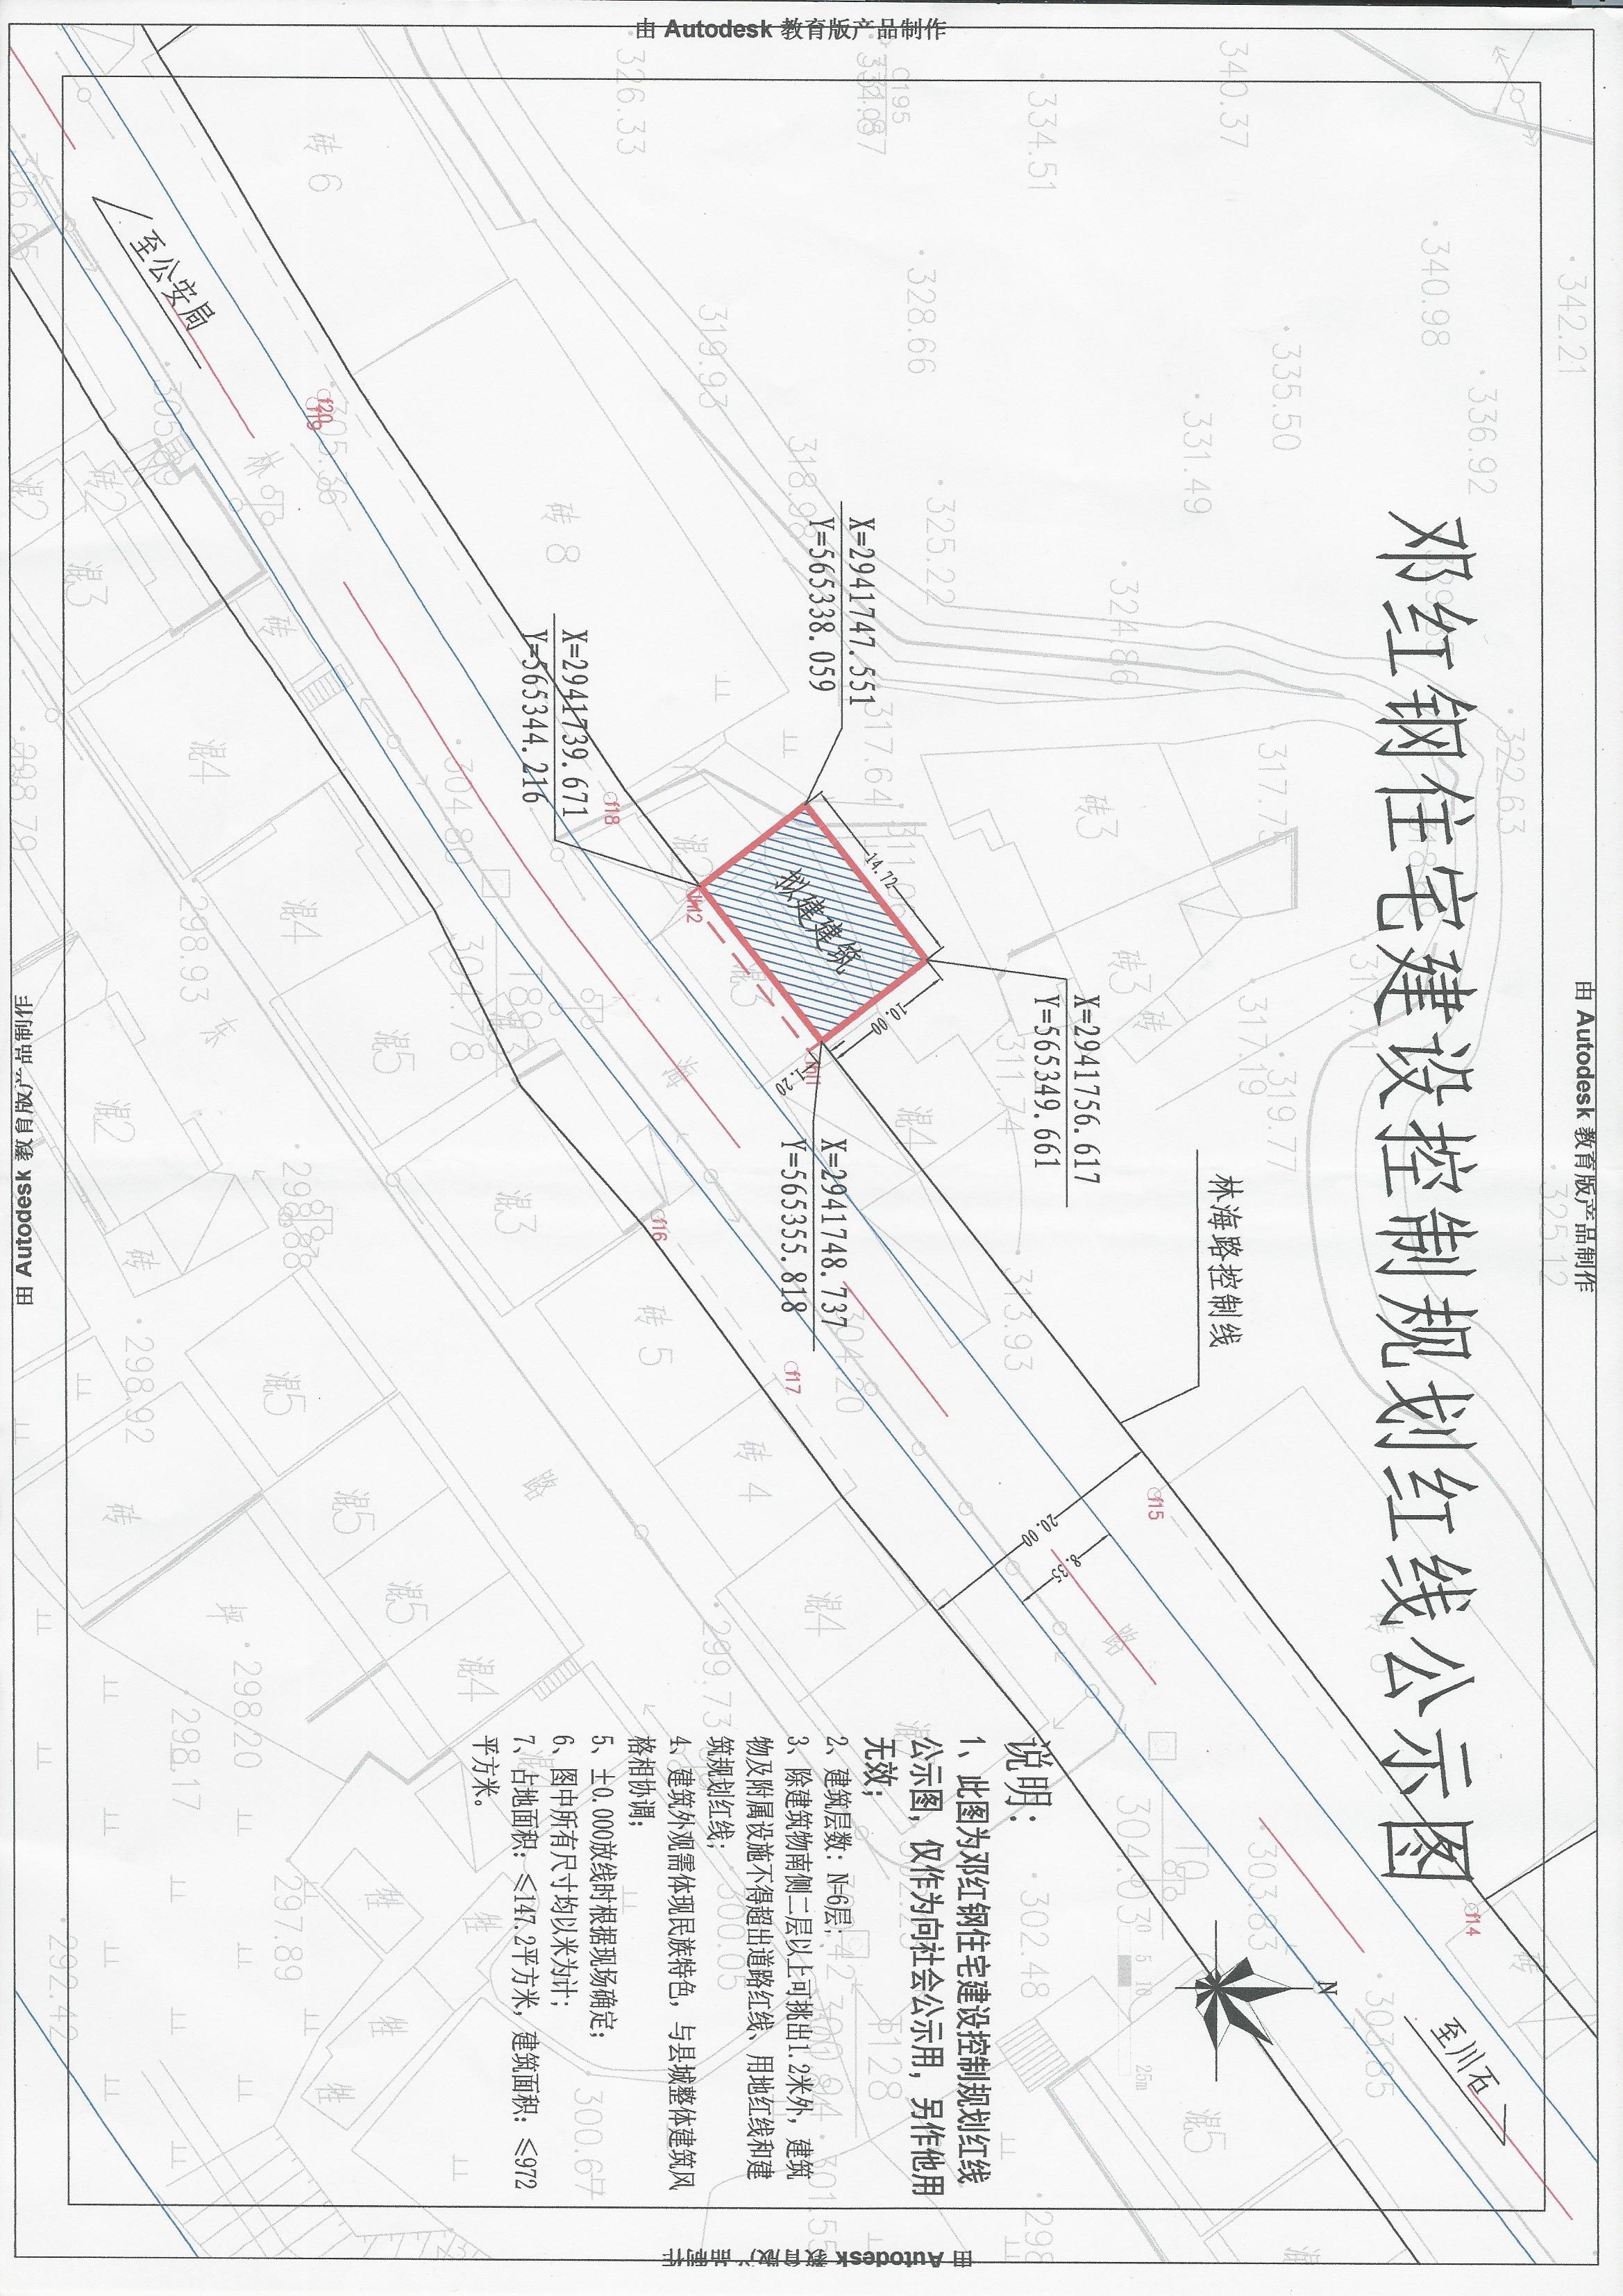 邓红钢住宅建设控制规划红线图批前公示